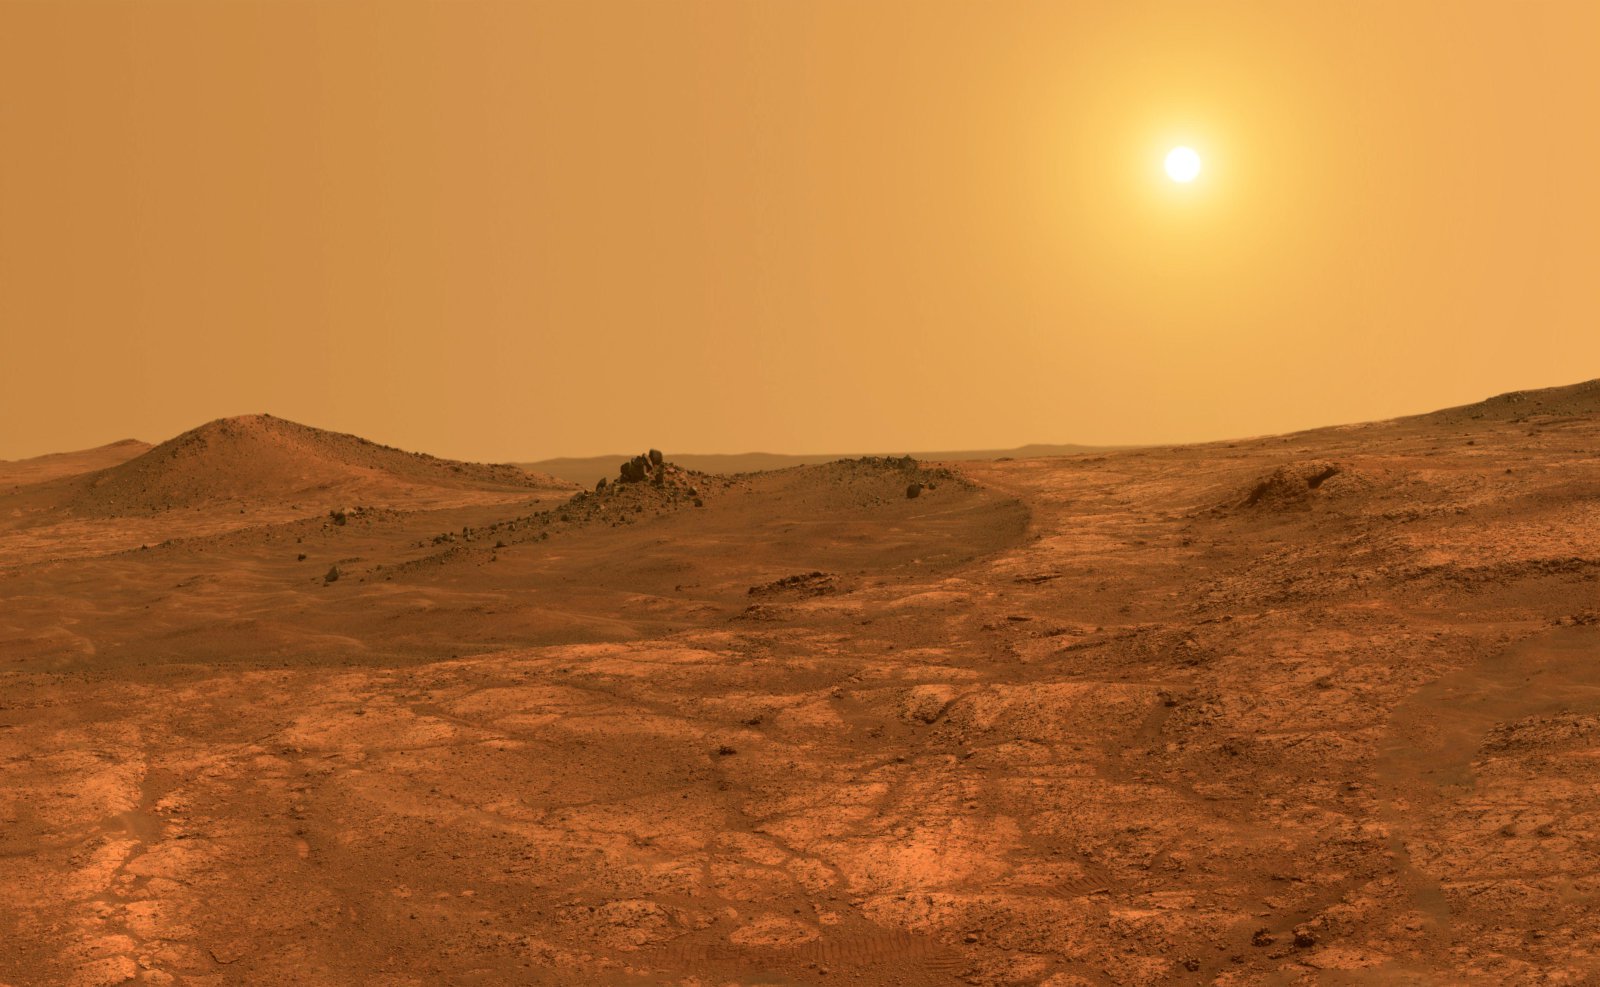 एयरबस का निर्माण होगा मार्स रोवर नमूने एकत्र करने के लिए की मंगल ग्रह का निवासी मिट्टी और उन्हें वापस करने के लिए पृथ्वी